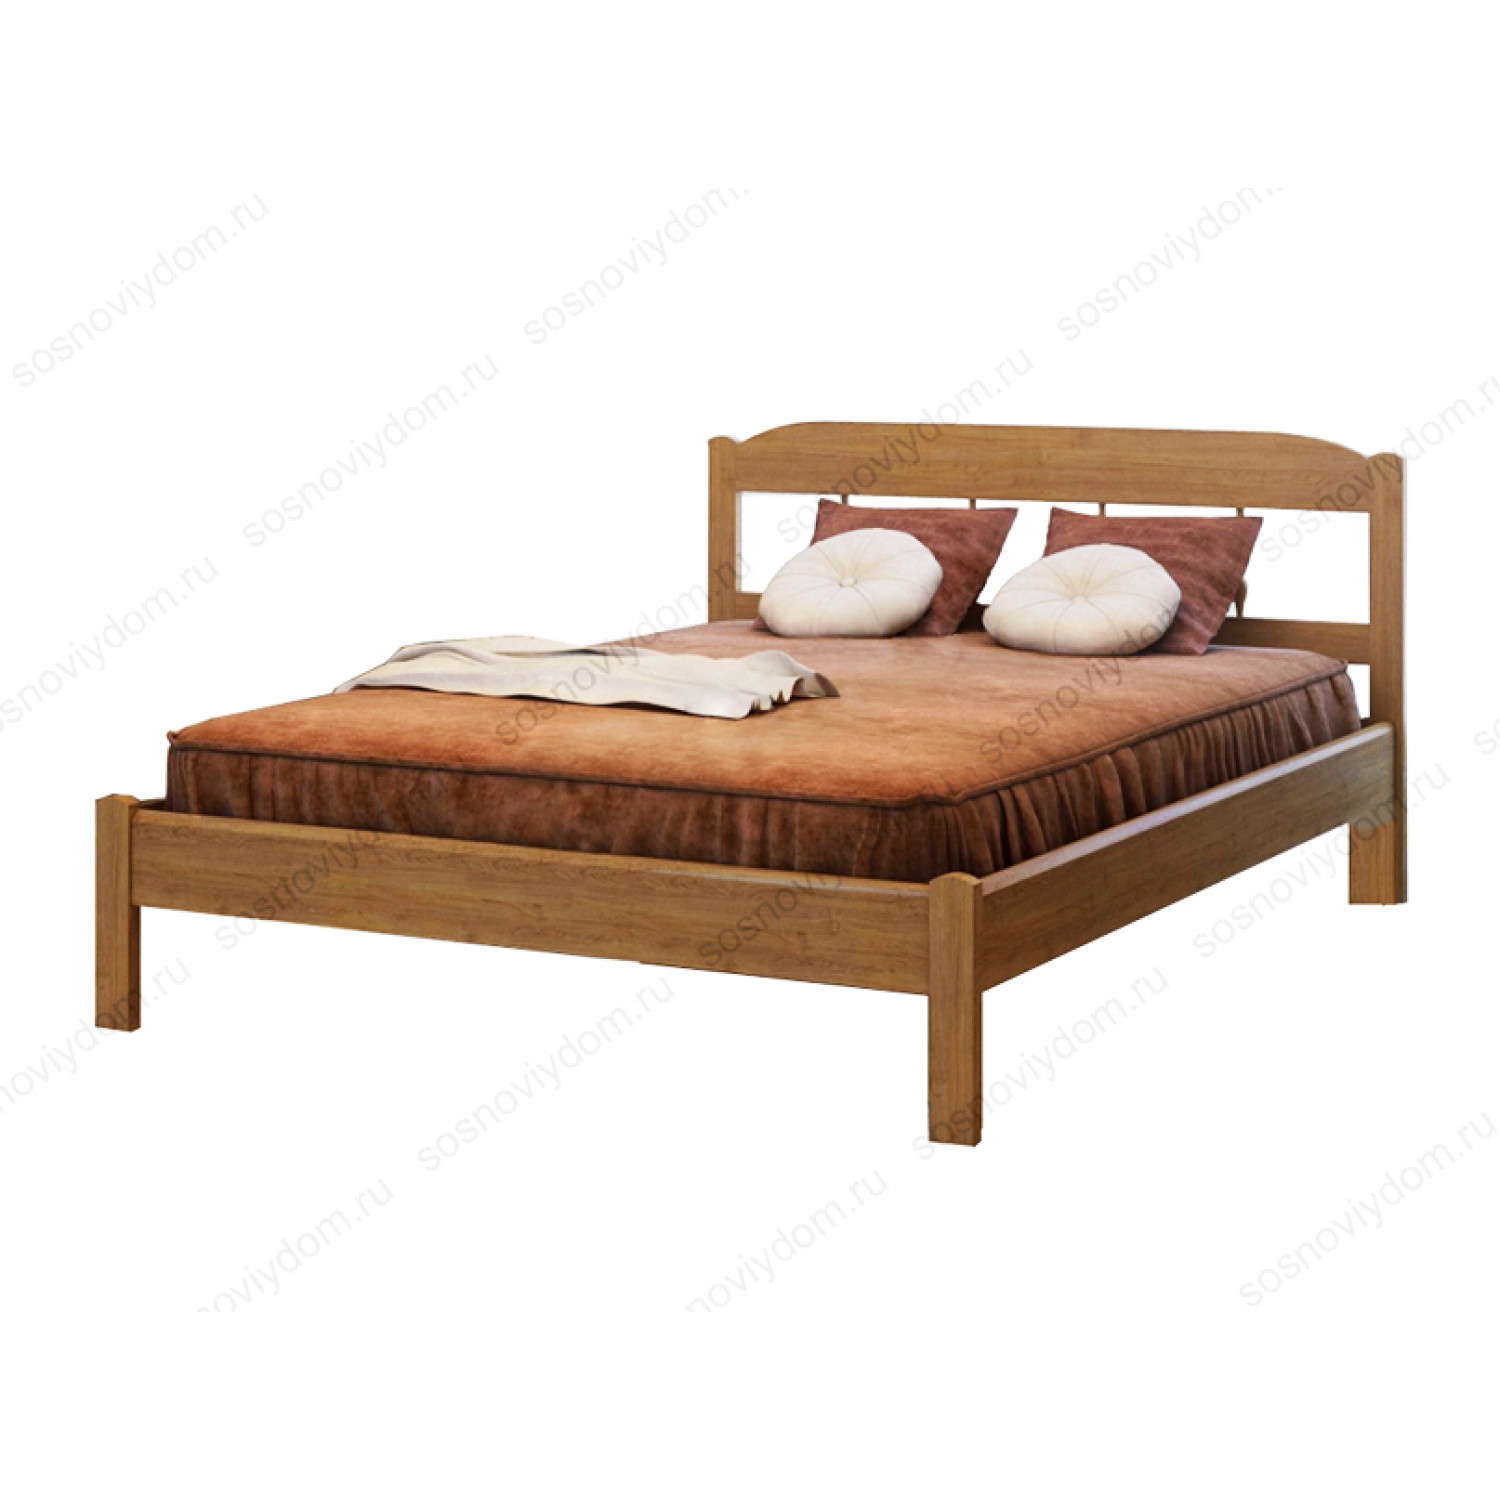 Купить кровать из массива в спб. Кровать Сакура Боринское дерево. Кровать ikea 160 200 из массива сосны. Кровать икеа двуспальная деревянная 160 200.